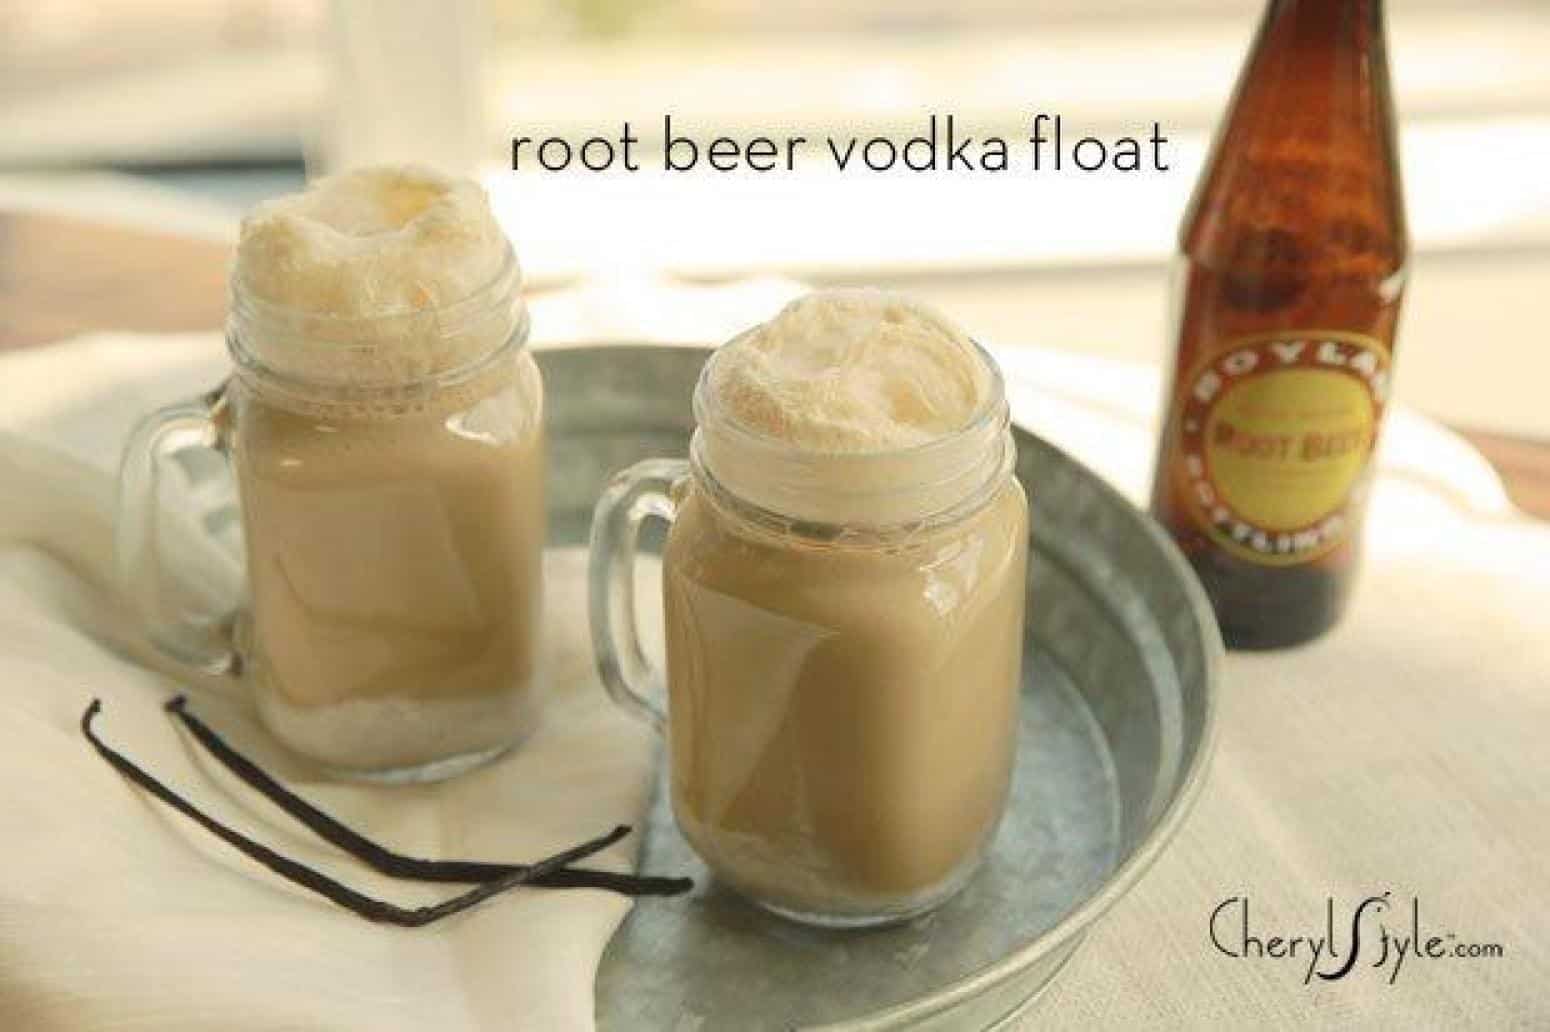 Root beer vodka float